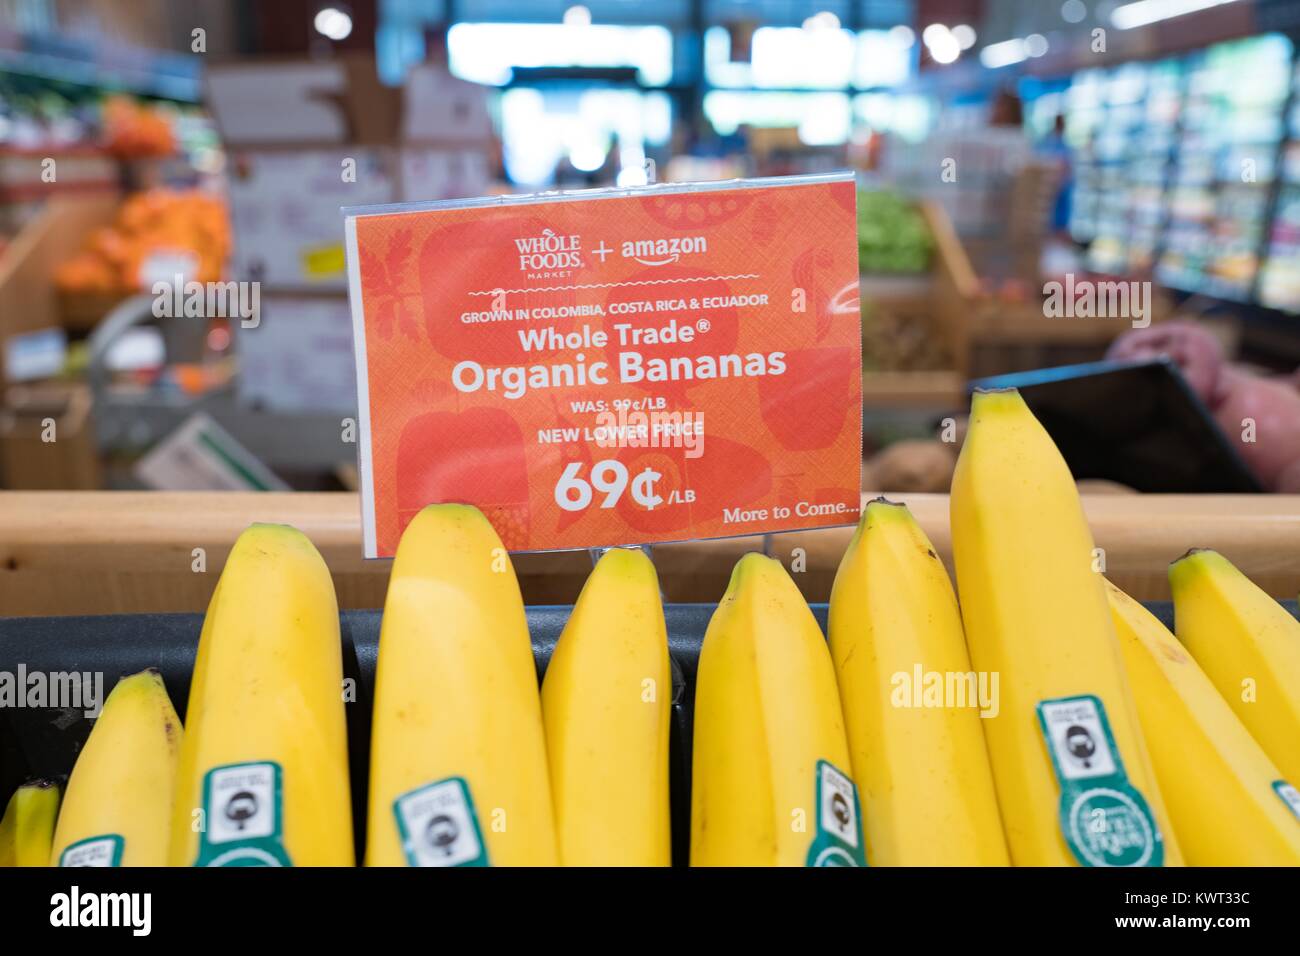 Insegne su un display di banane a Whole Foods Market Store di San Ramon,  California la lettura "Whole Foods Market e Amazon, nuovo prezzo più basso,  più a venire", annunciando Whole Foods